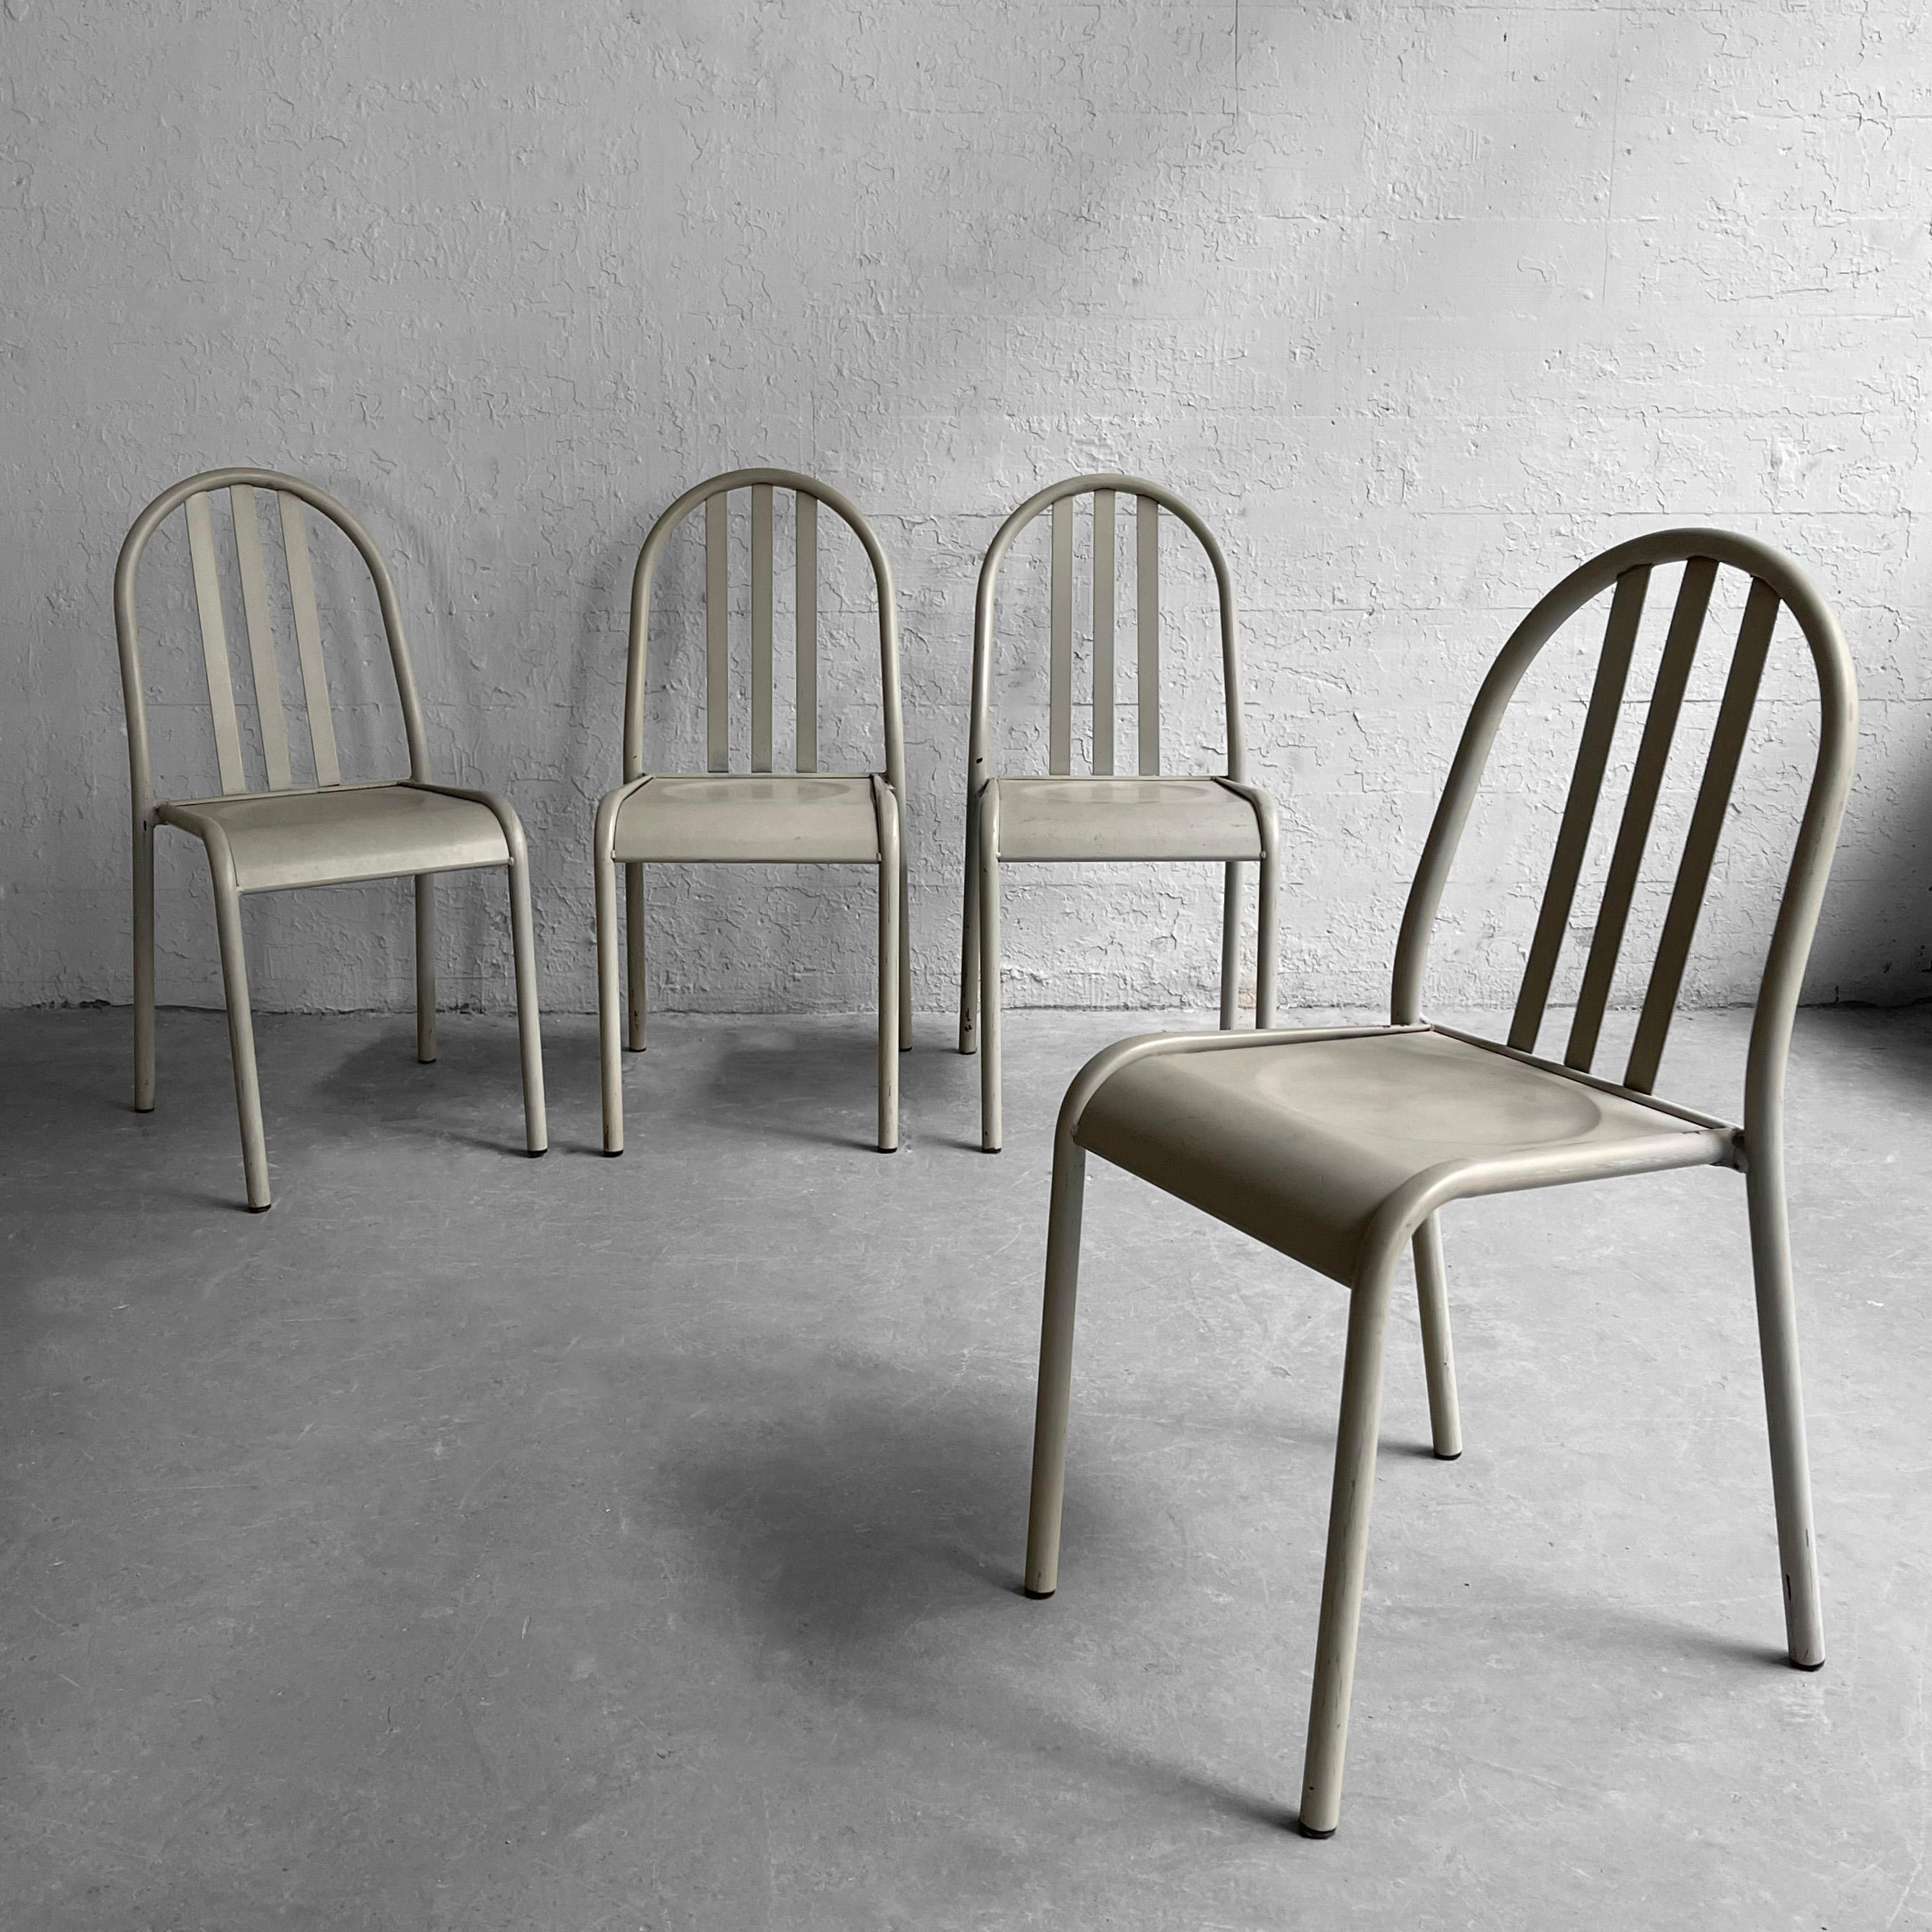 4 Stühle aus grauem Metall im postmodernen Stil von Robert Mallet-Stevens mit Rohrrahmen, Rückenlehne aus Latten und konturierter Sitzfläche.